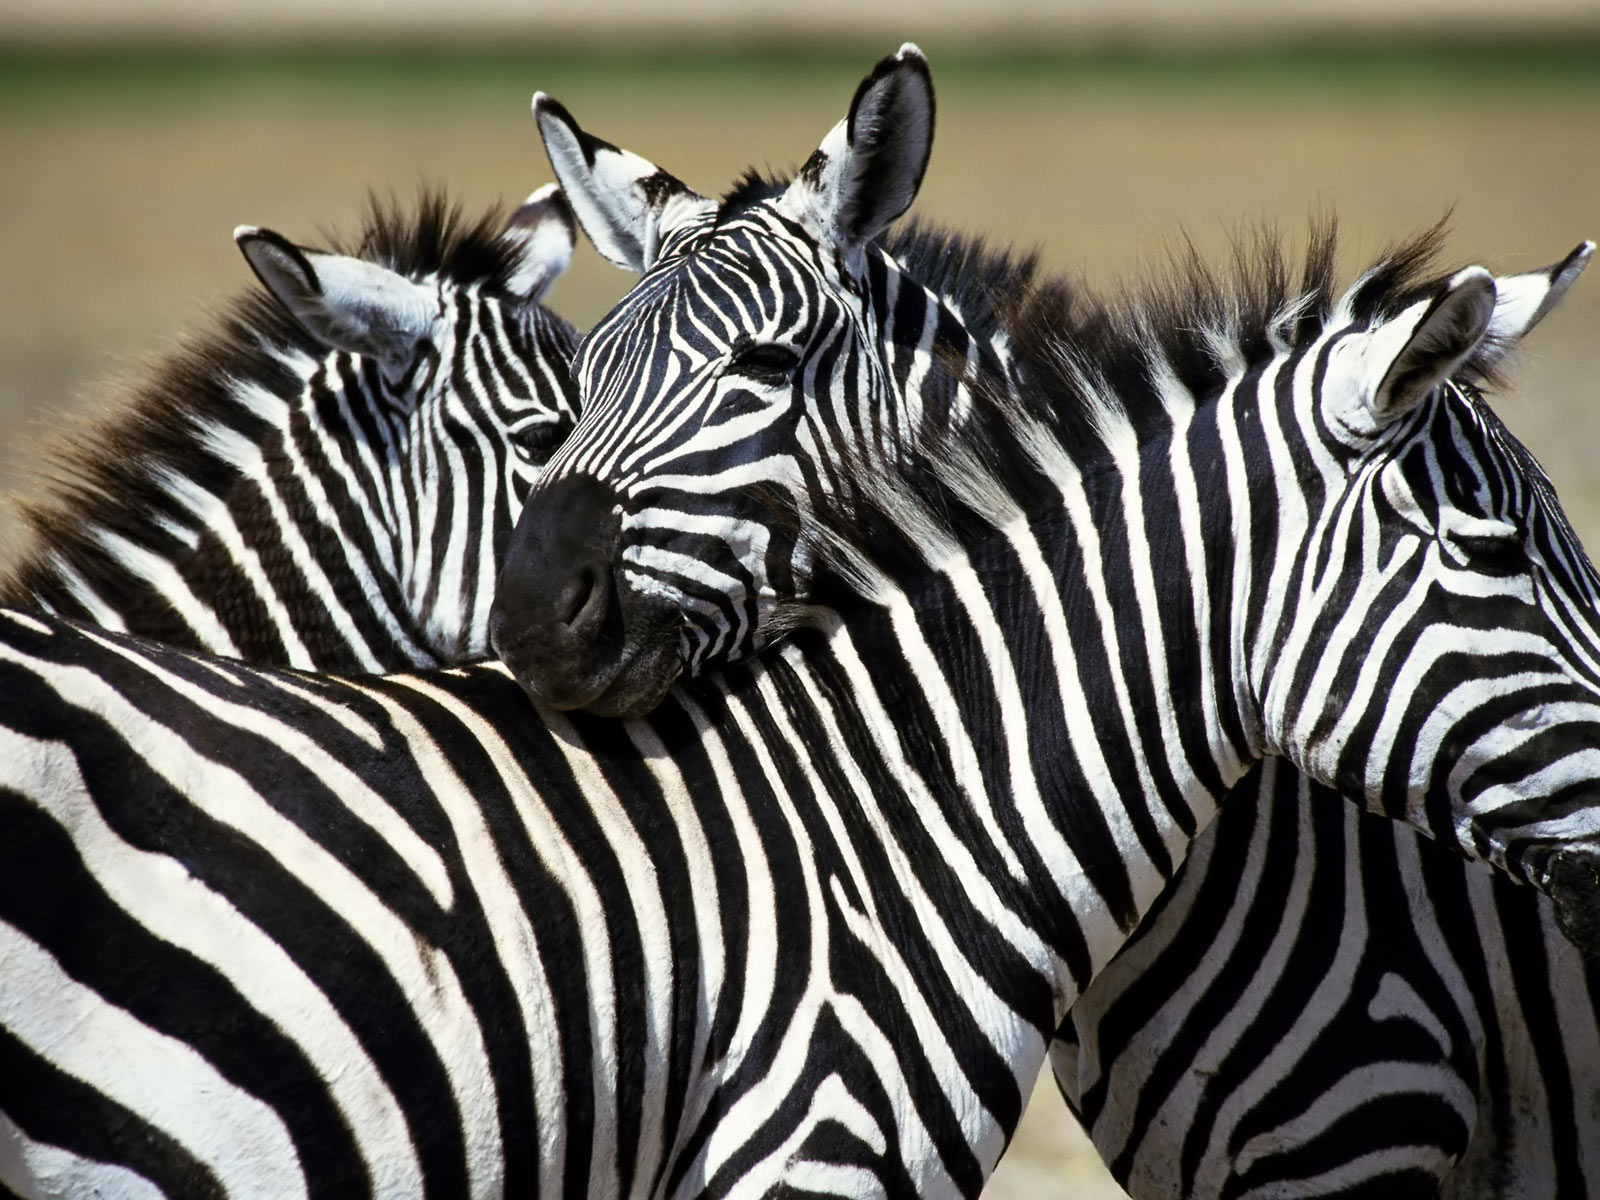 Trè zebras